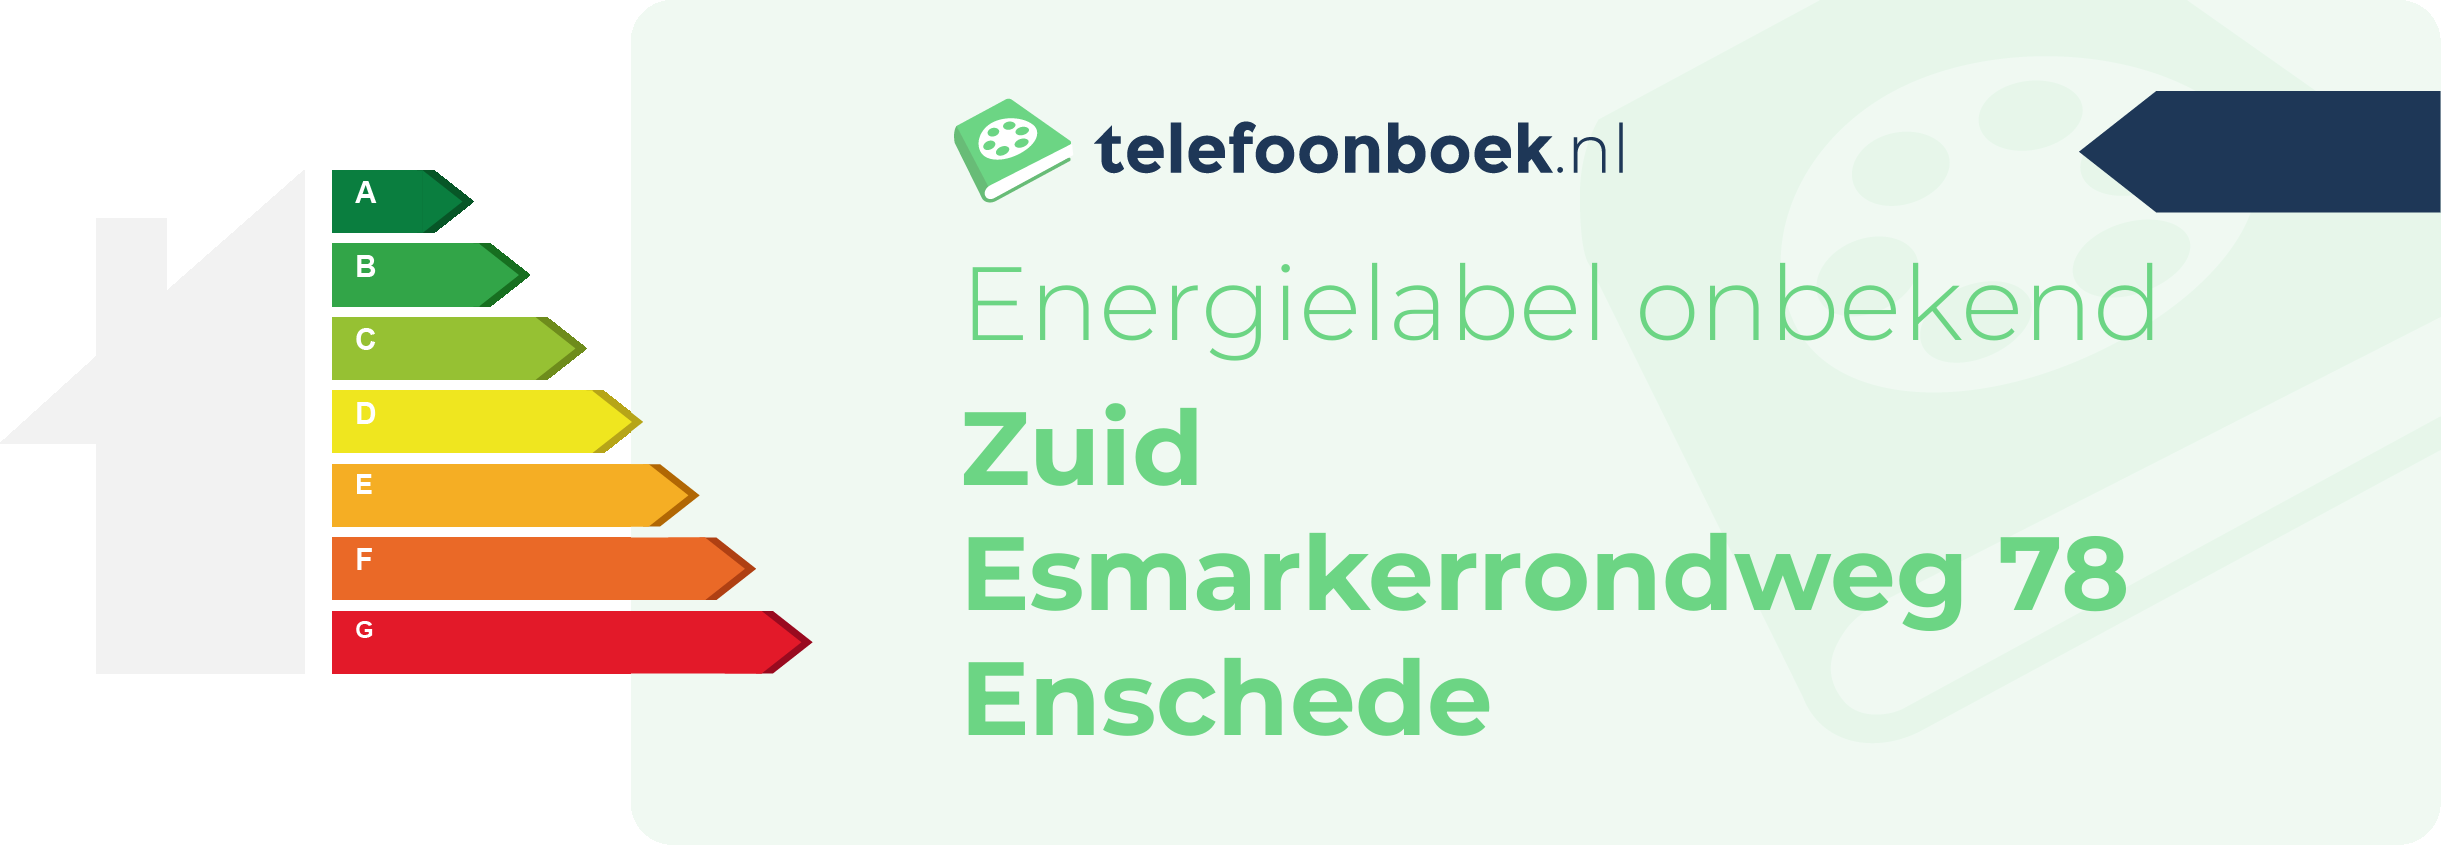 Energielabel Zuid Esmarkerrondweg 78 Enschede